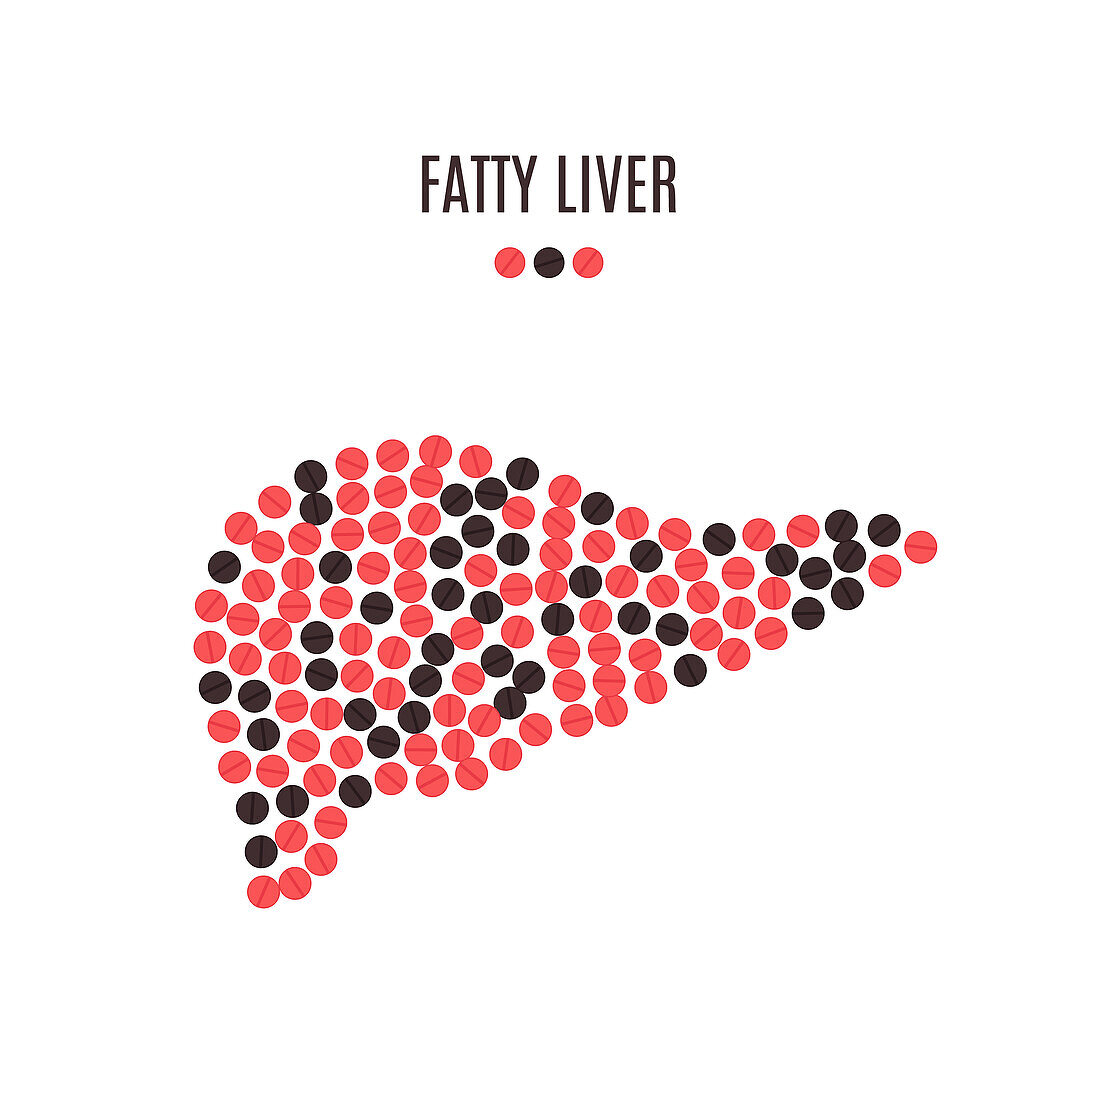 Fatty liver, conceptual illustration